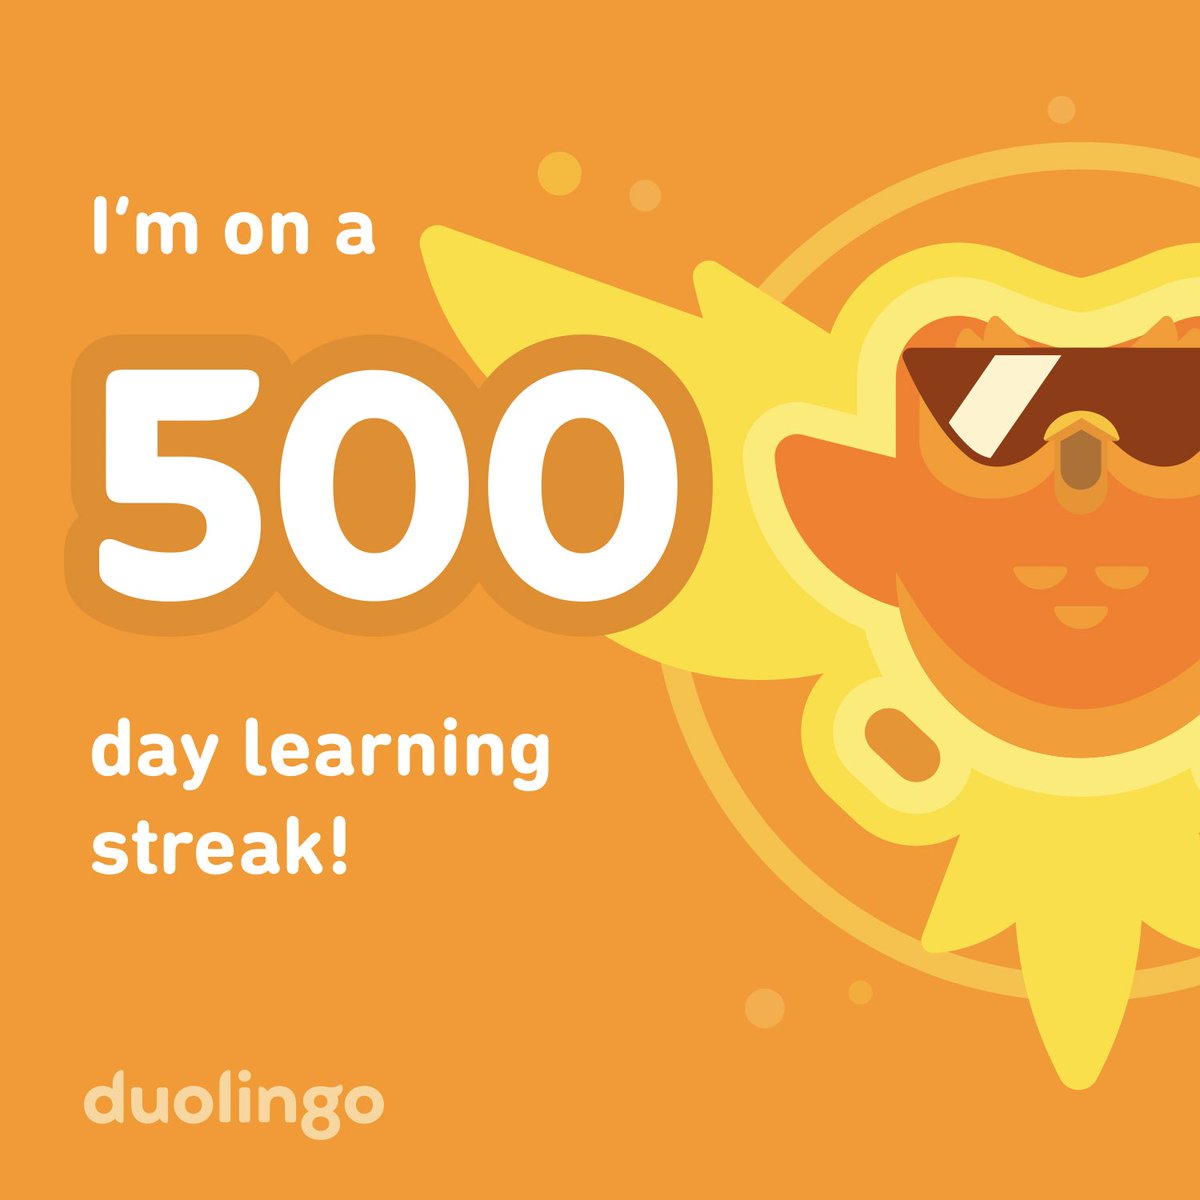 I’ve been practicing my Spanish for 500 days straight! ¡He estado practicando mi español durante 500 días seguidos!